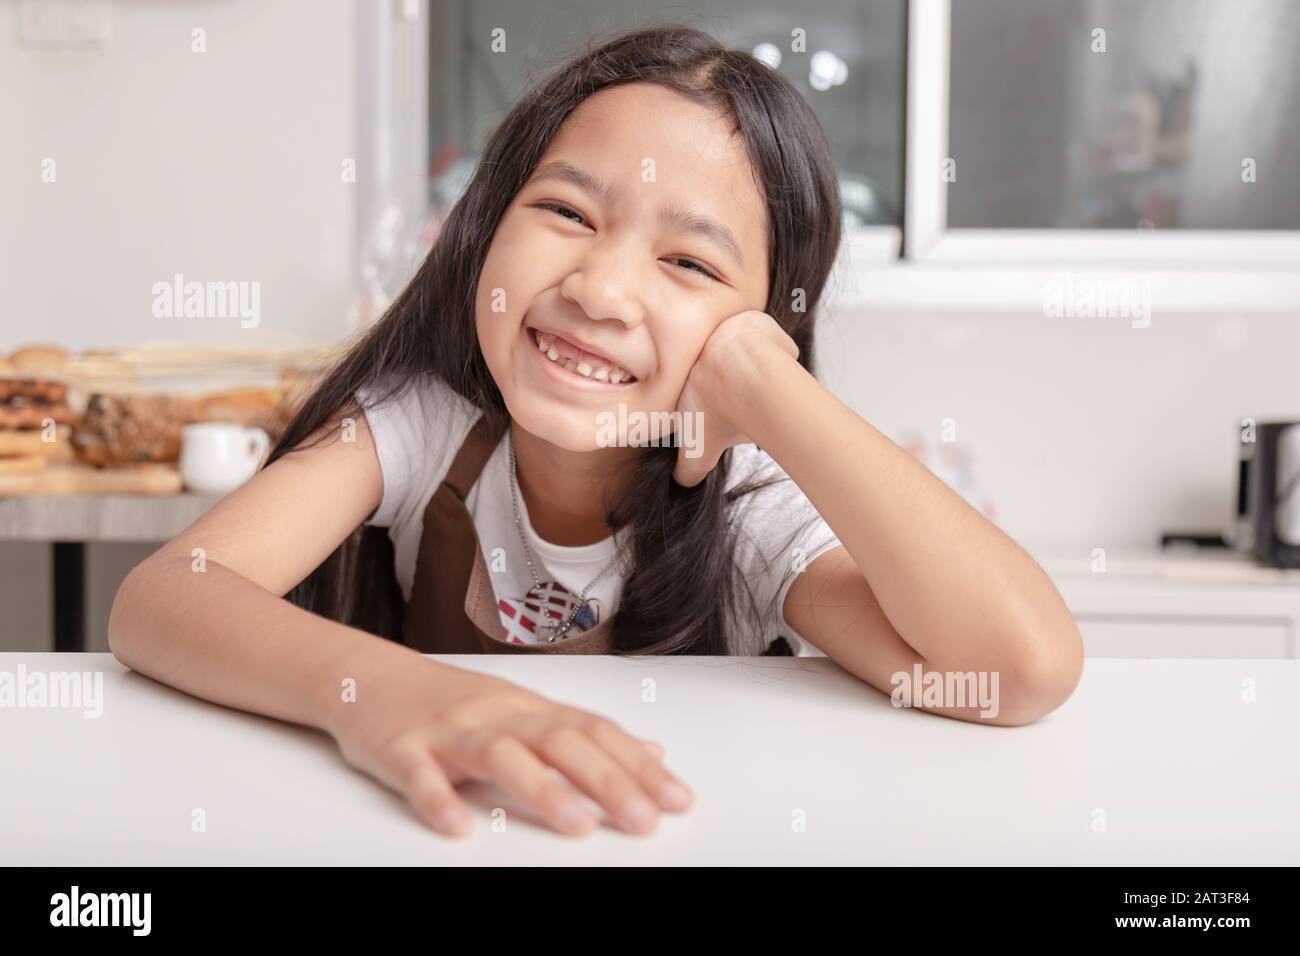 Une petite fille asiatique souriante a vu sa dent cassée sur une table de cuisson blanche dans la cuisine avec bonheur. Banque D'Images